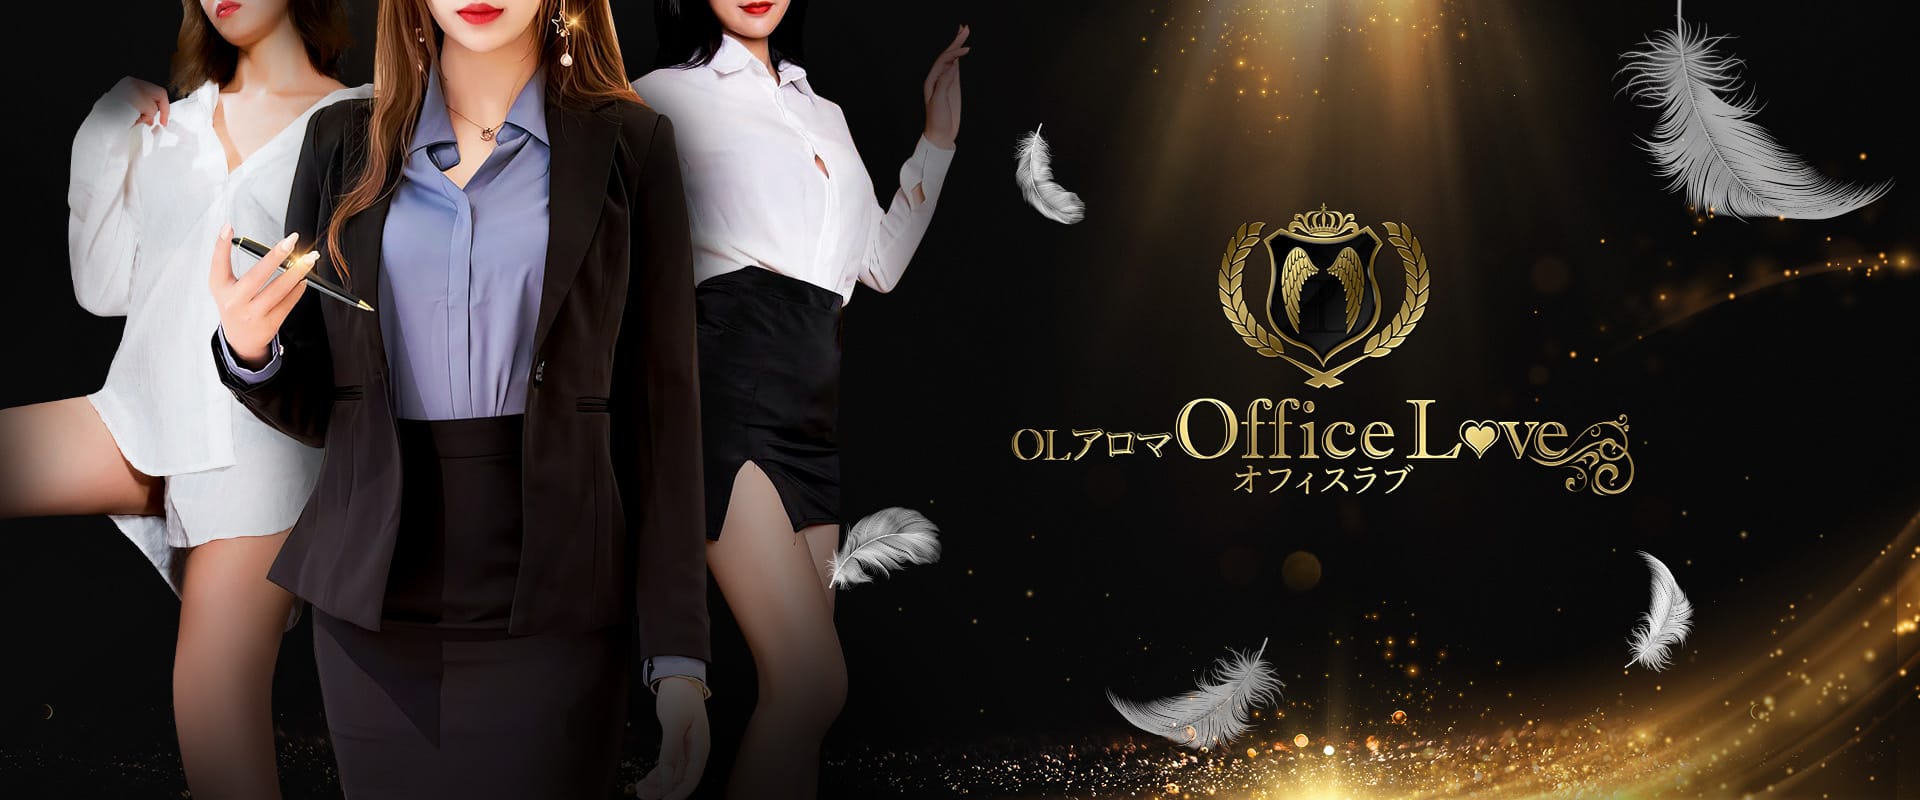 「〜１st ANNIVERSARY〜」04/11(木) 19:54 | OLアロマ Office Love-オフィスラブ-のお得なニュース